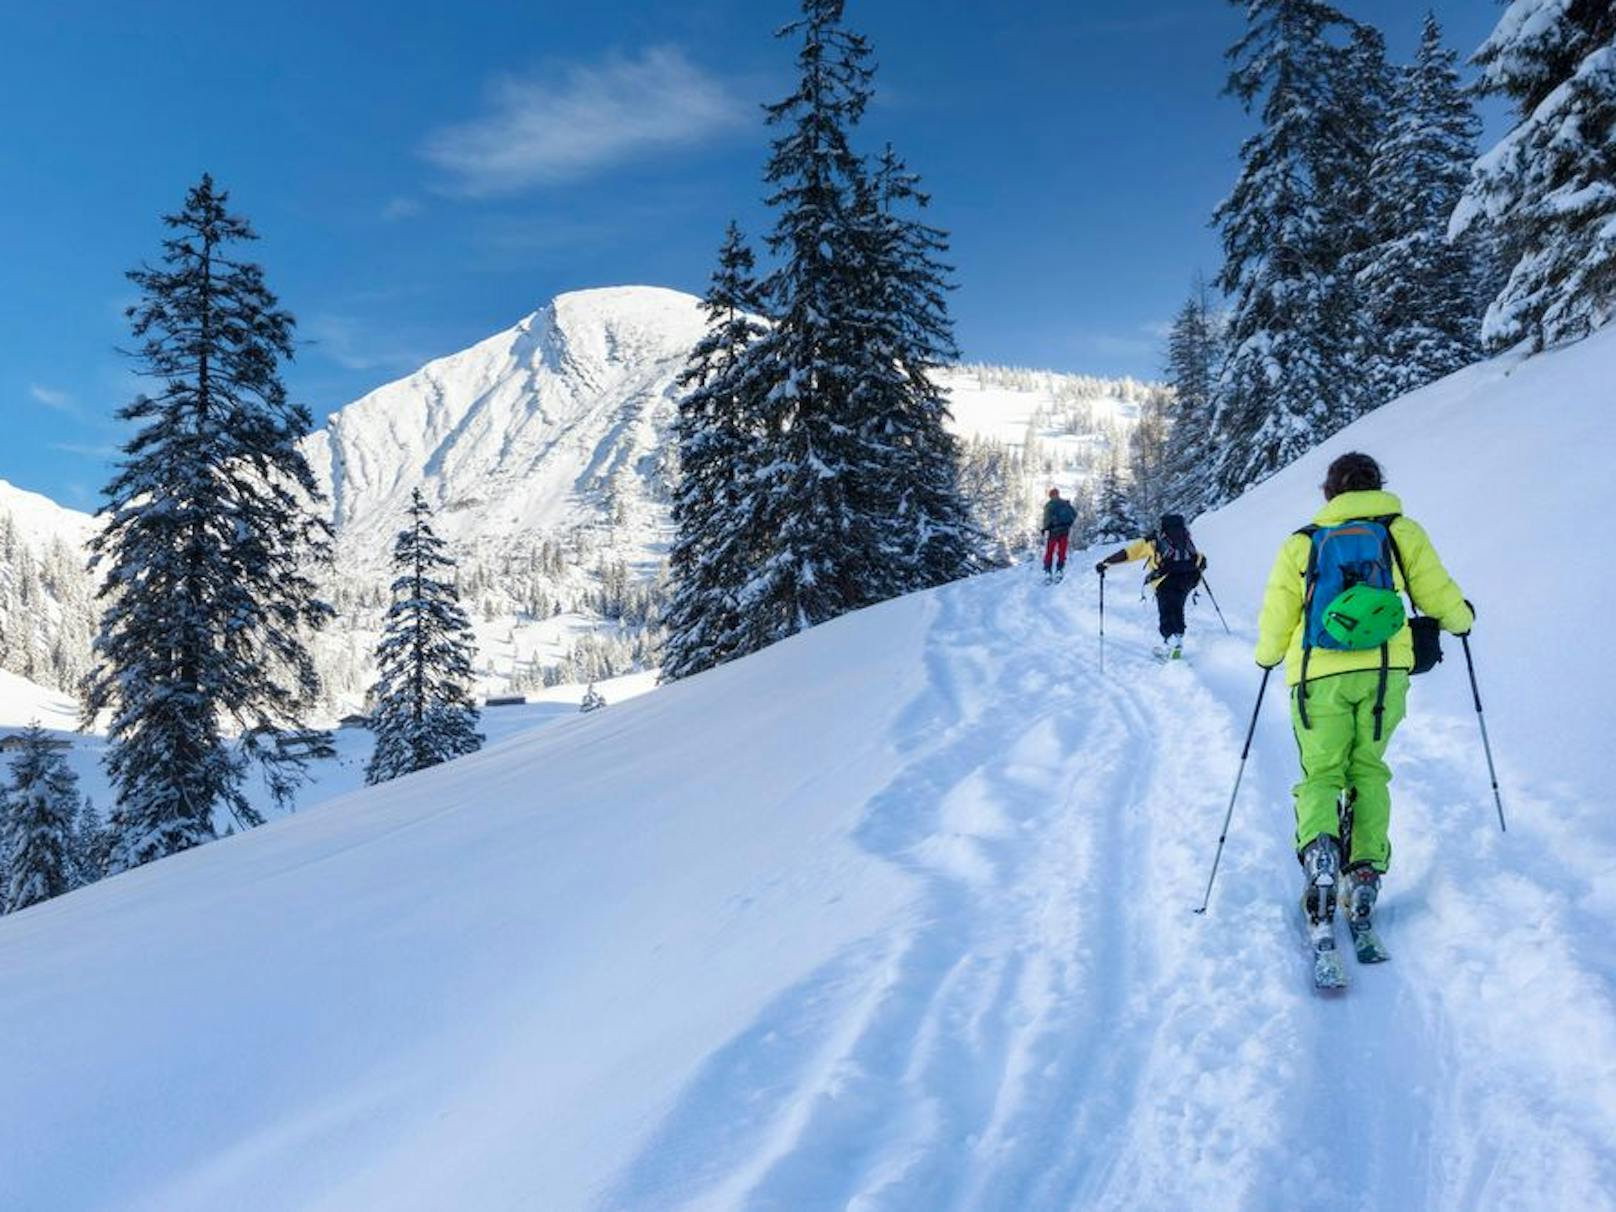 Skitouren sind ein echtes "Zurück-zur-Natur-Erlebnis" und erfreuen sich zunehmender Beliebtheit.